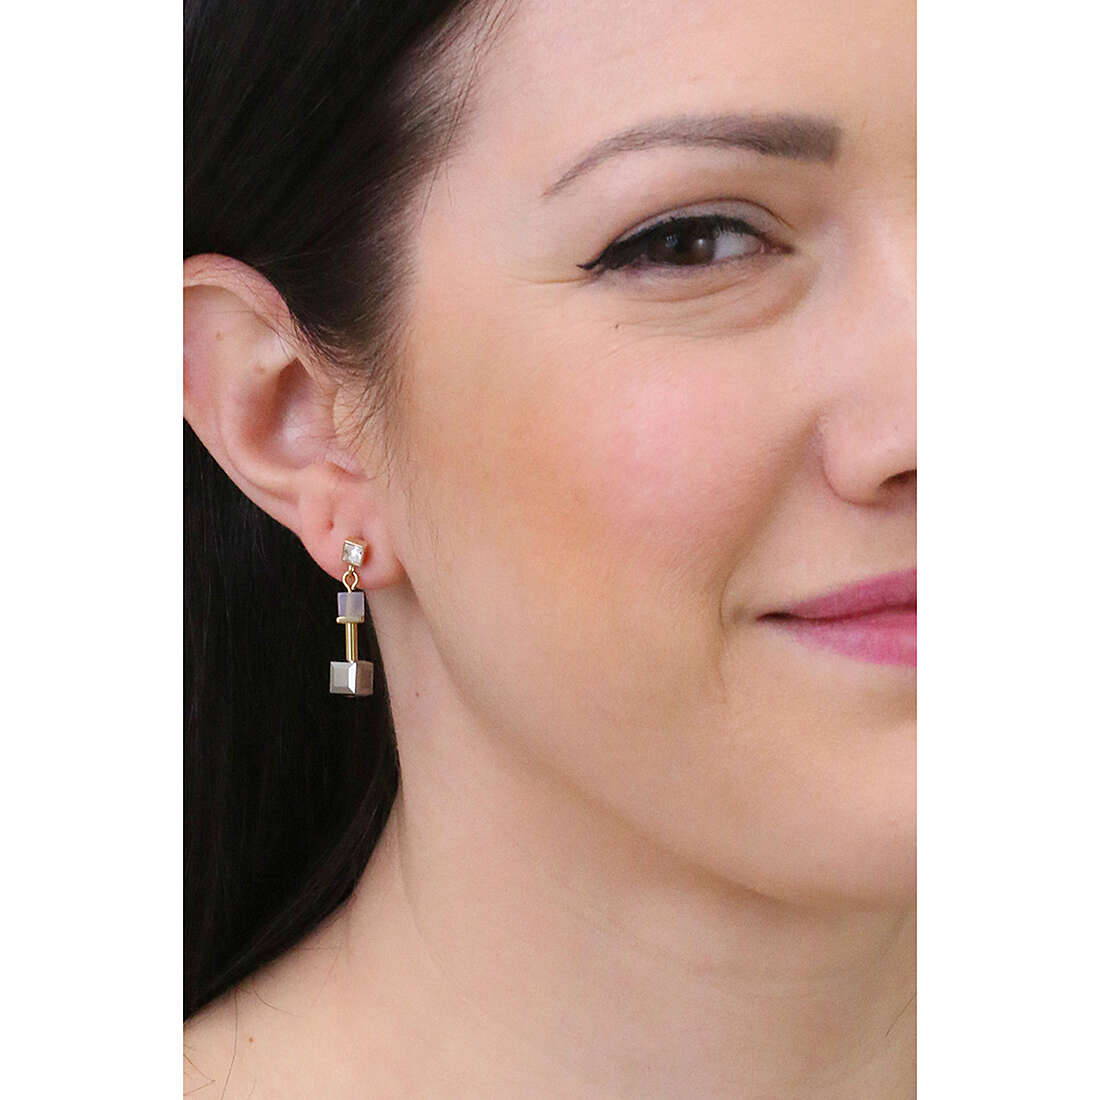 Coeur De Lion earrings woman 5074/21-1216 photo wearing